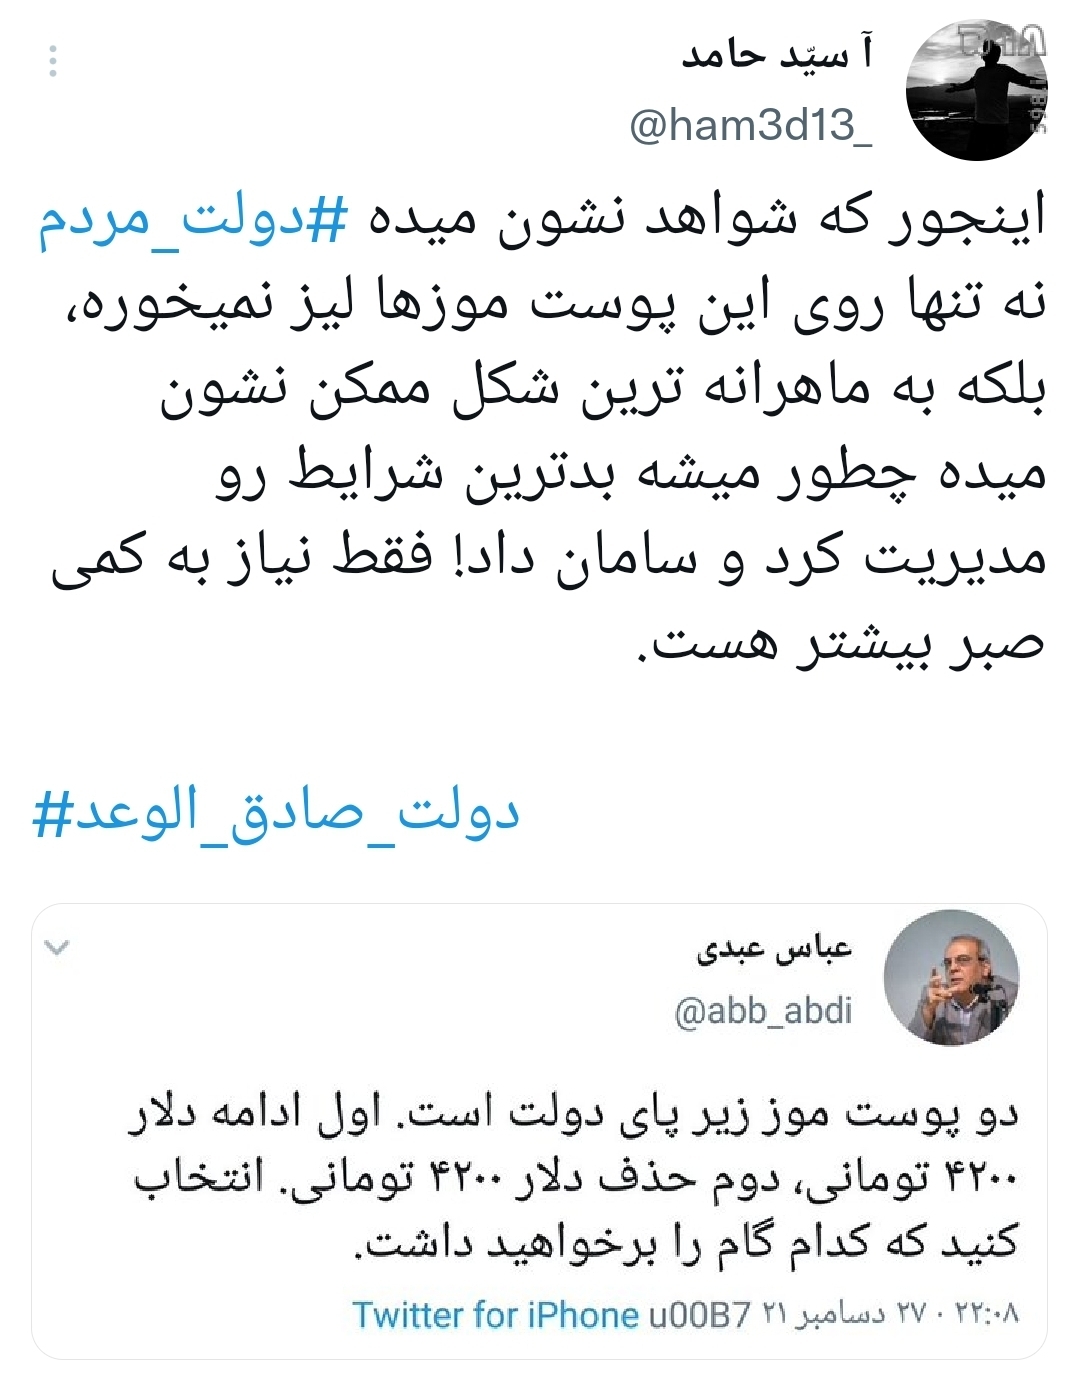 دولت صادق الوعد هشتگ داغ توییتر فارسی پس از سخنرانی رئیسی / عمل به وعده تنها پس از چند ساعت!